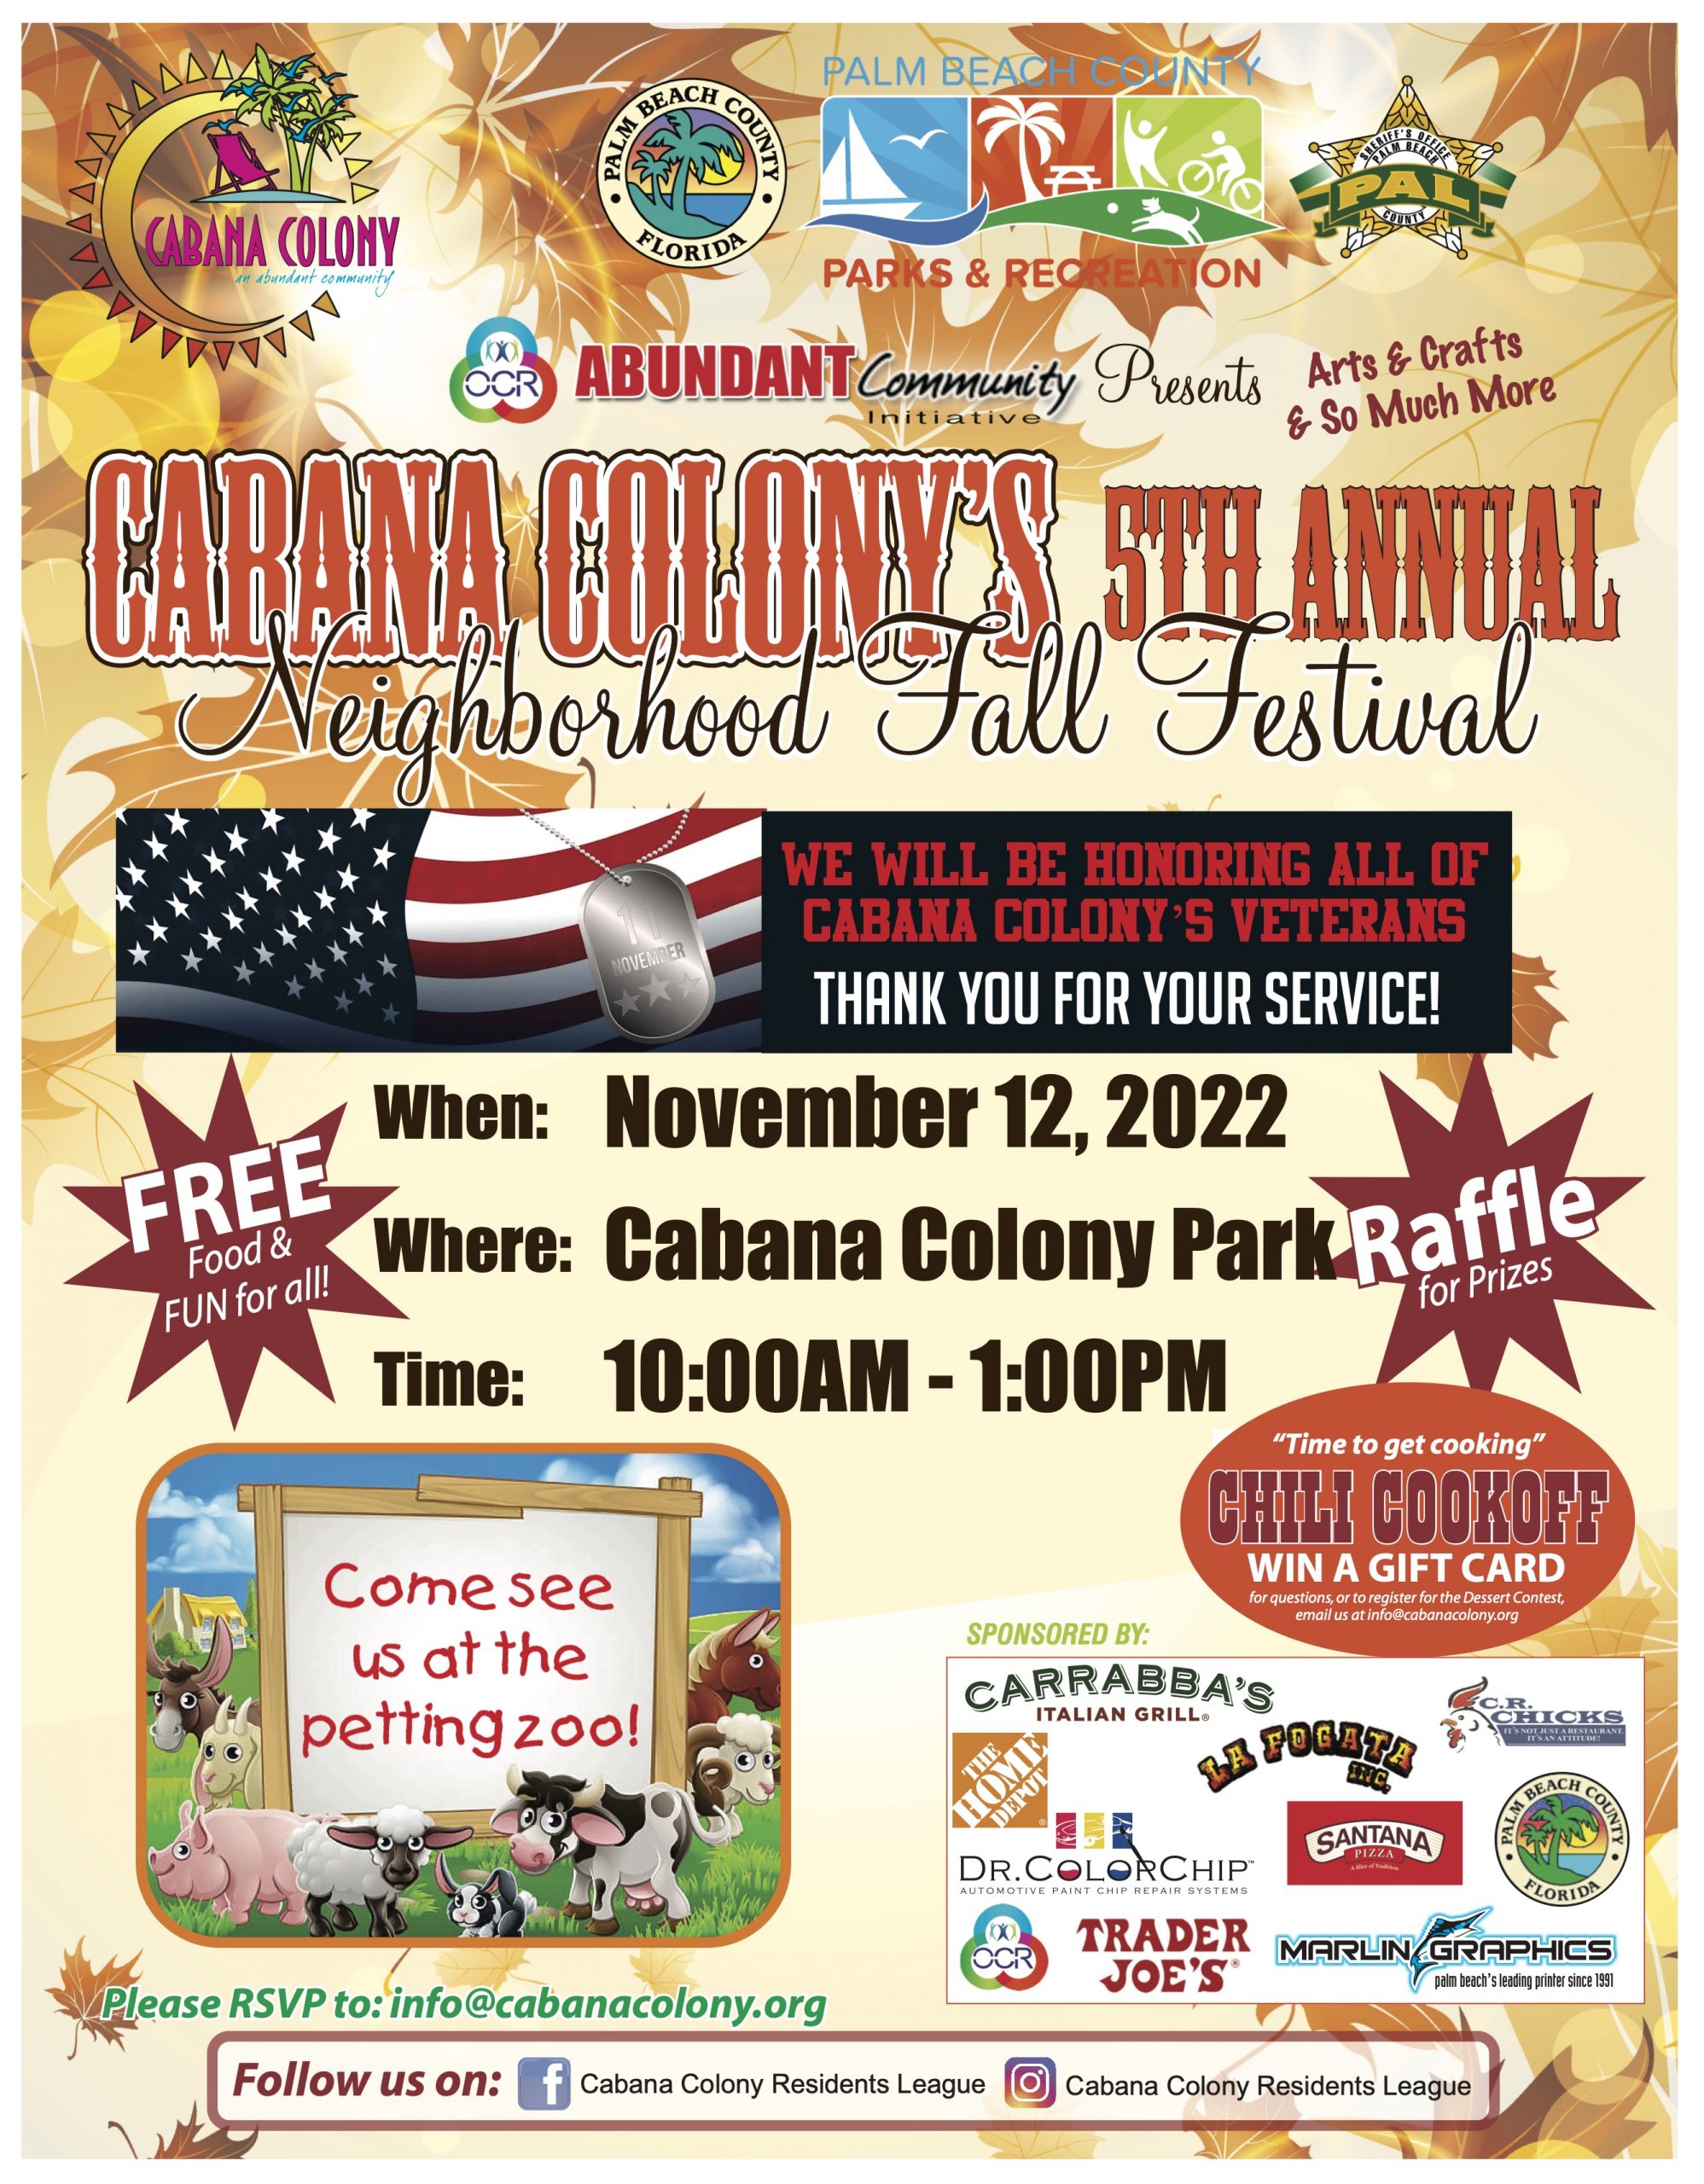 Cabana Colony's 5th Annual Neighborhood Fall Festival 11-12-22